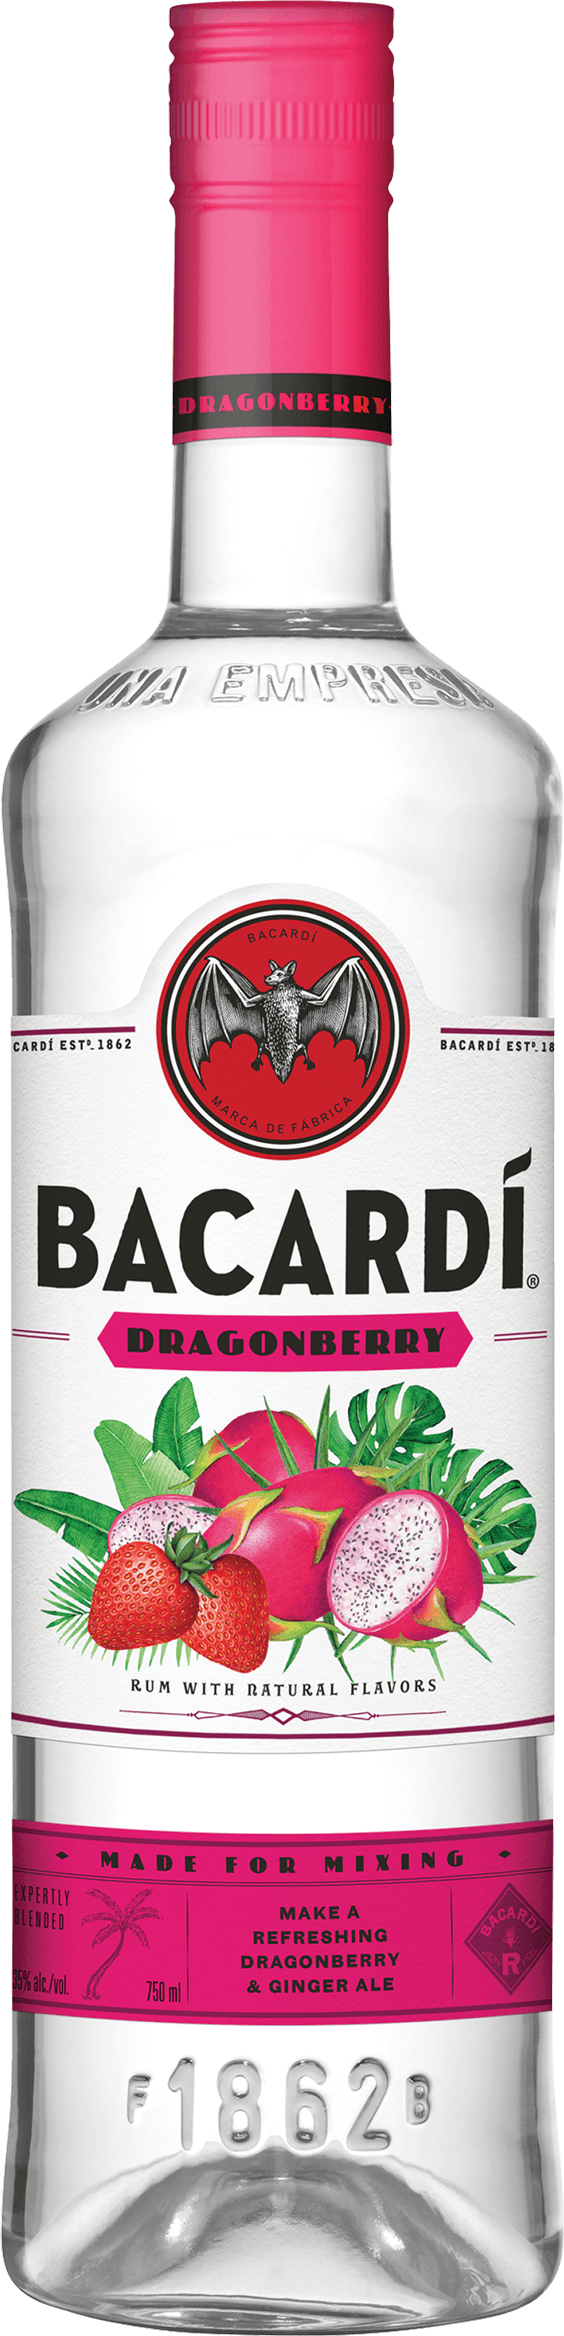 Bacardi DragonBerry Rum